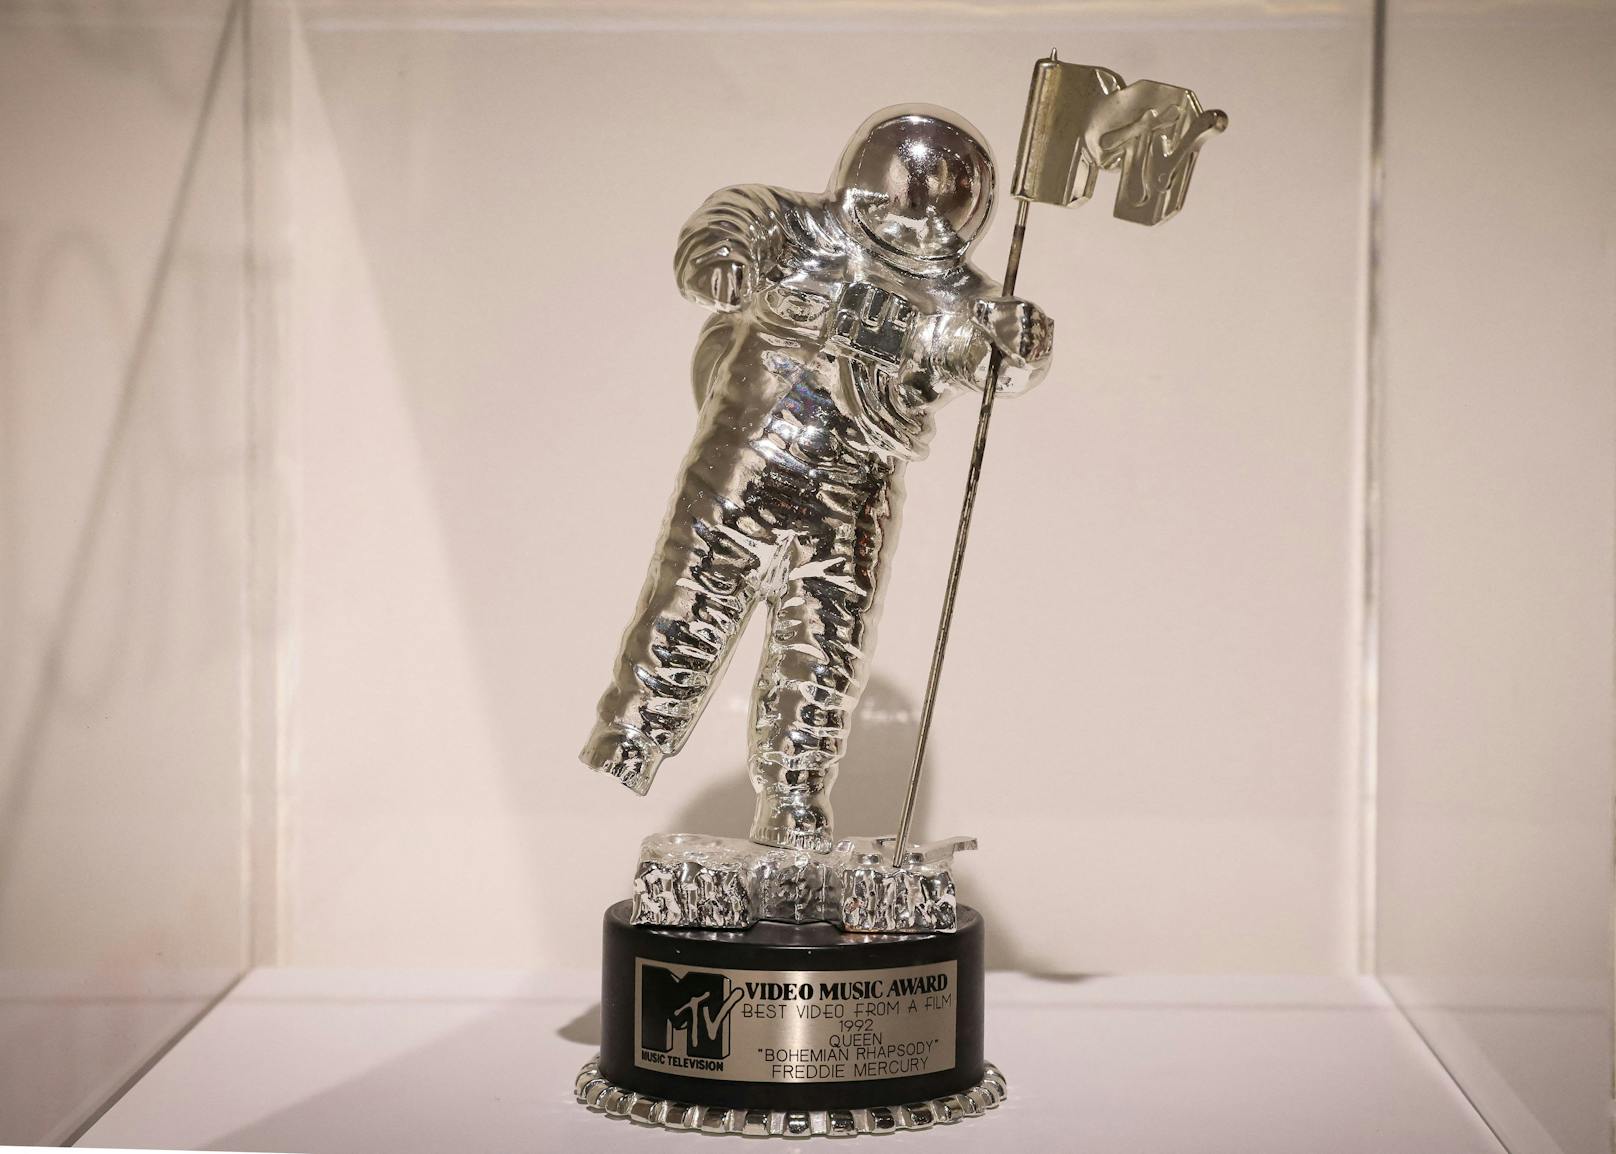 Auch der MTV Music Video Award für das beste Video aus einem Film, gewonnen von Freddie Mercury für Bohemian Rhapsody in Wayne's World, ist zu sehen.